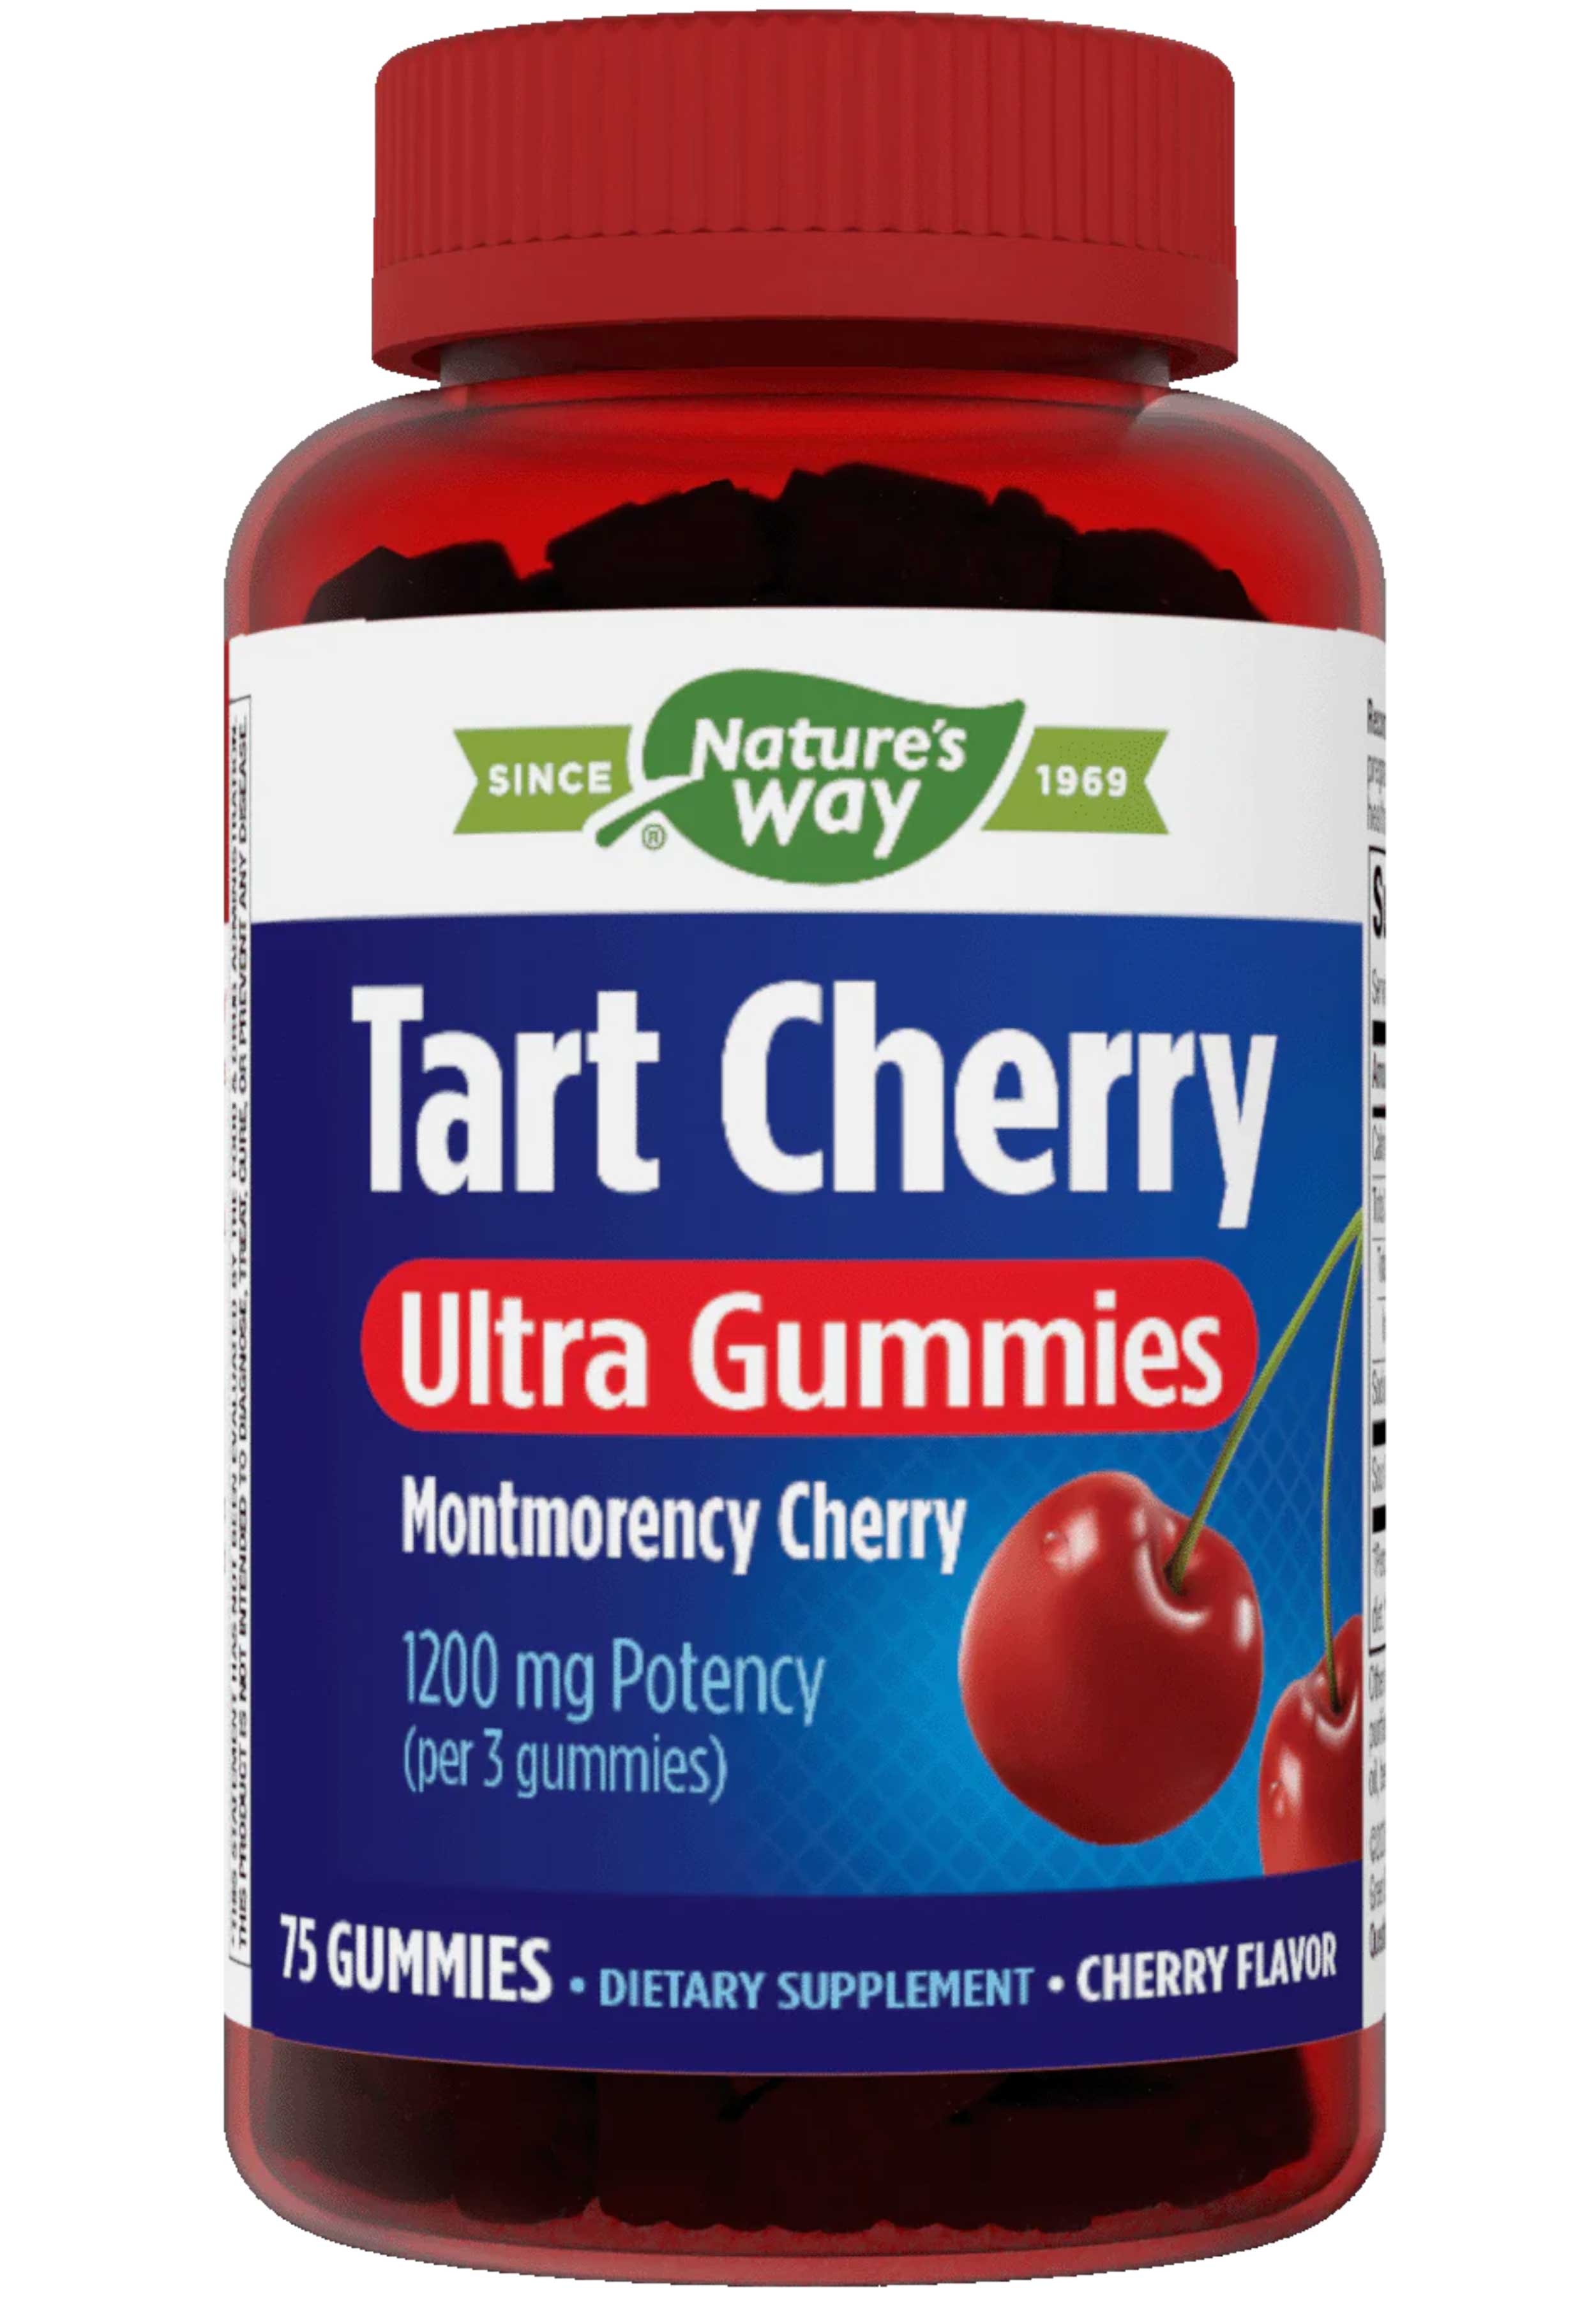 Nature's Way Tart Cherry Ultra Gummies